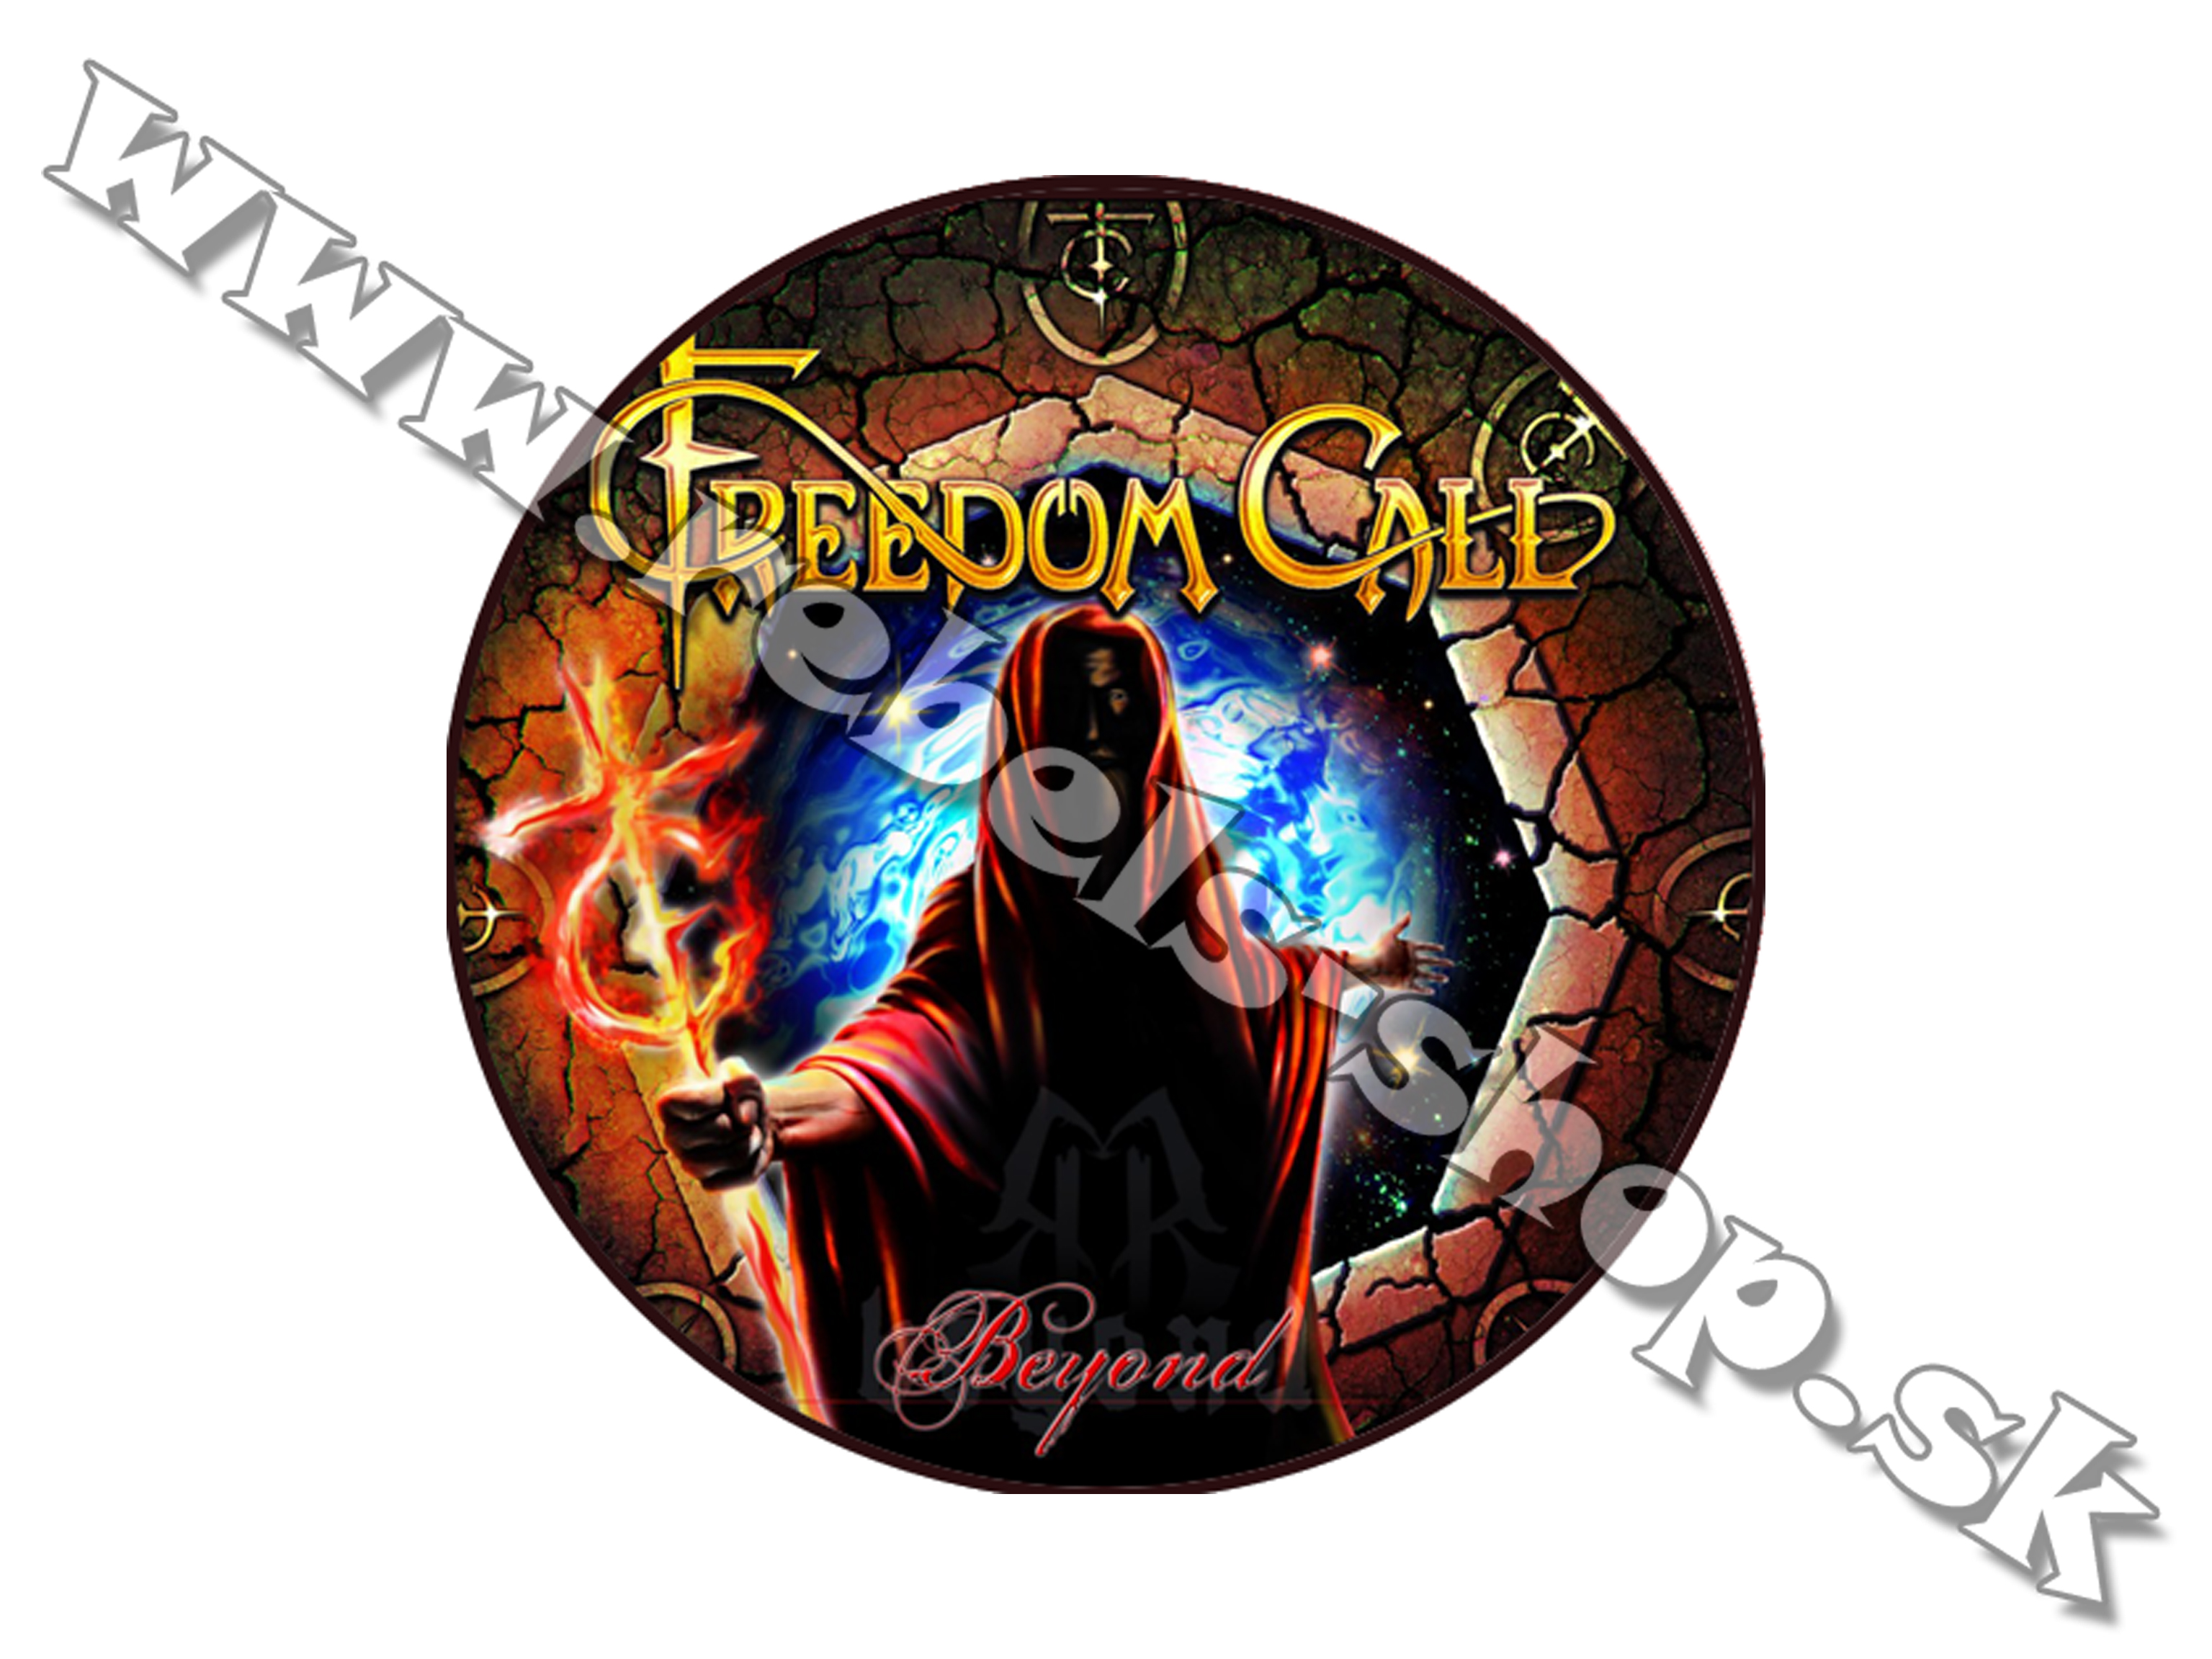 Odznak "Freedom Call"